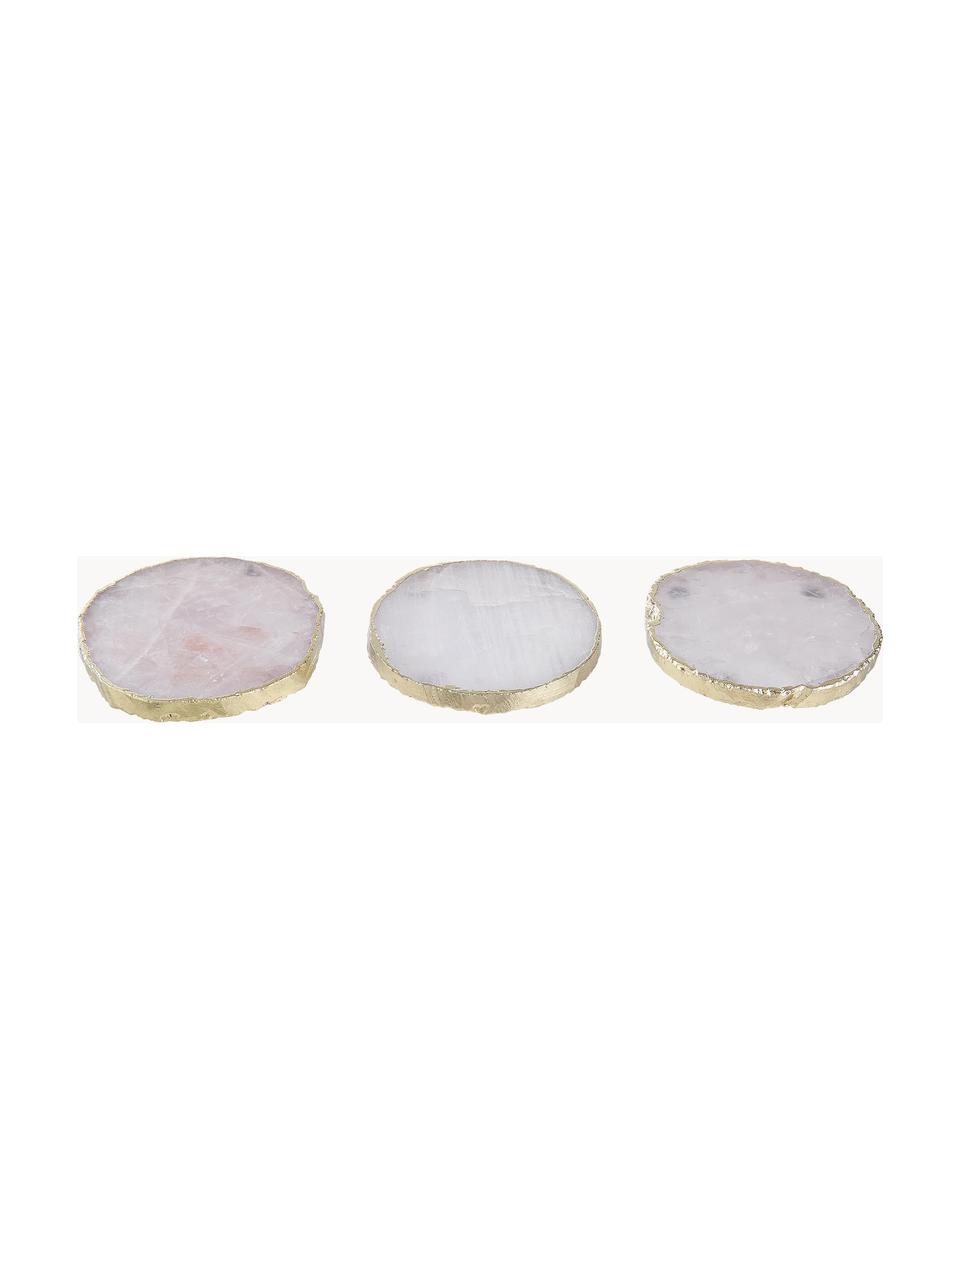 Onderzetters Crystale van edelstenen, 4 stuks, Witte kwarts, Lichtroze, goudkleurig, Ø 11 cm